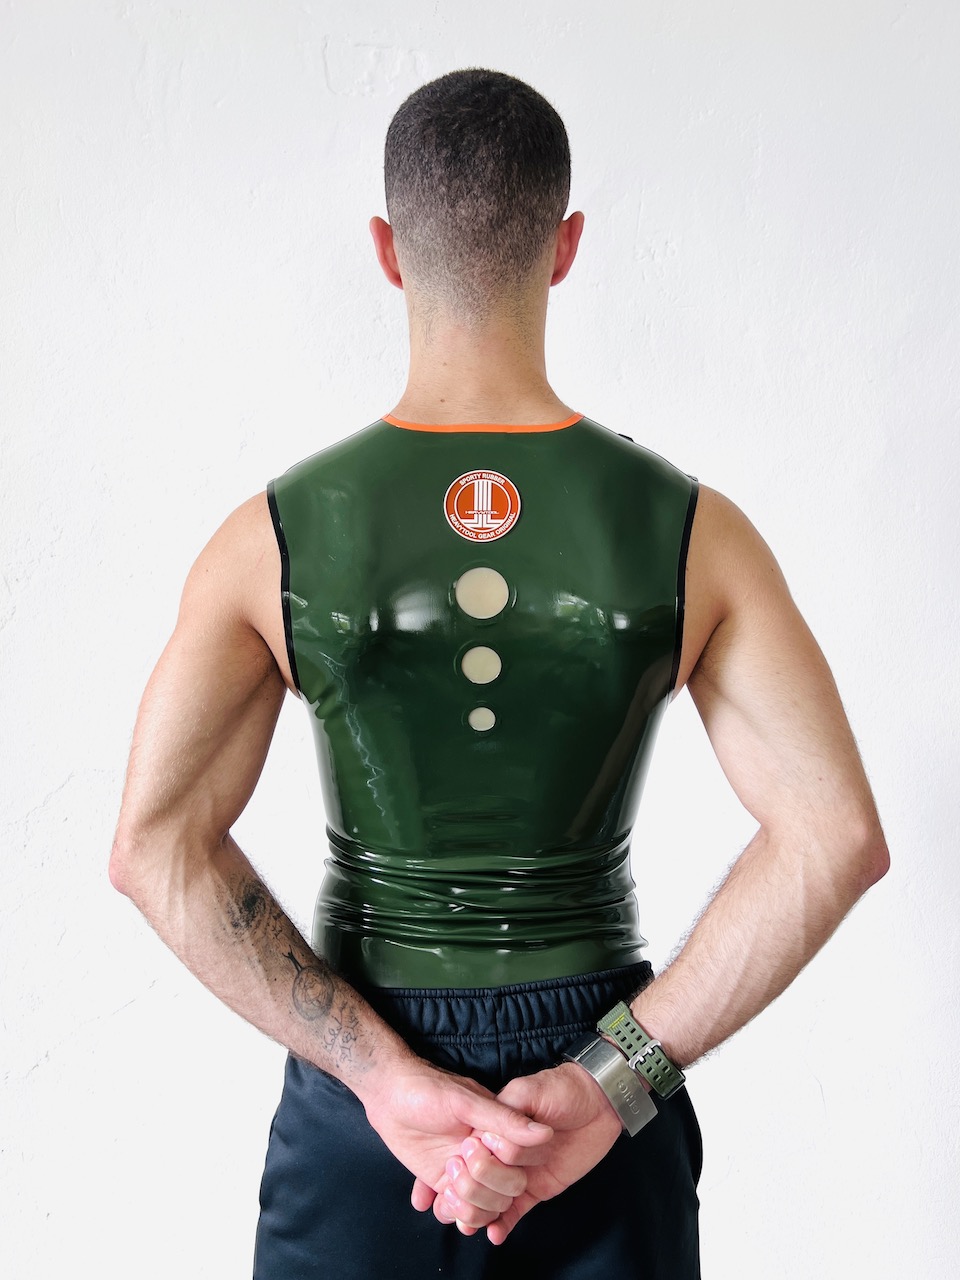 Rubber Sleeveless mit Scherpe & Logo in oliv, transparente Details auf dem Rücken